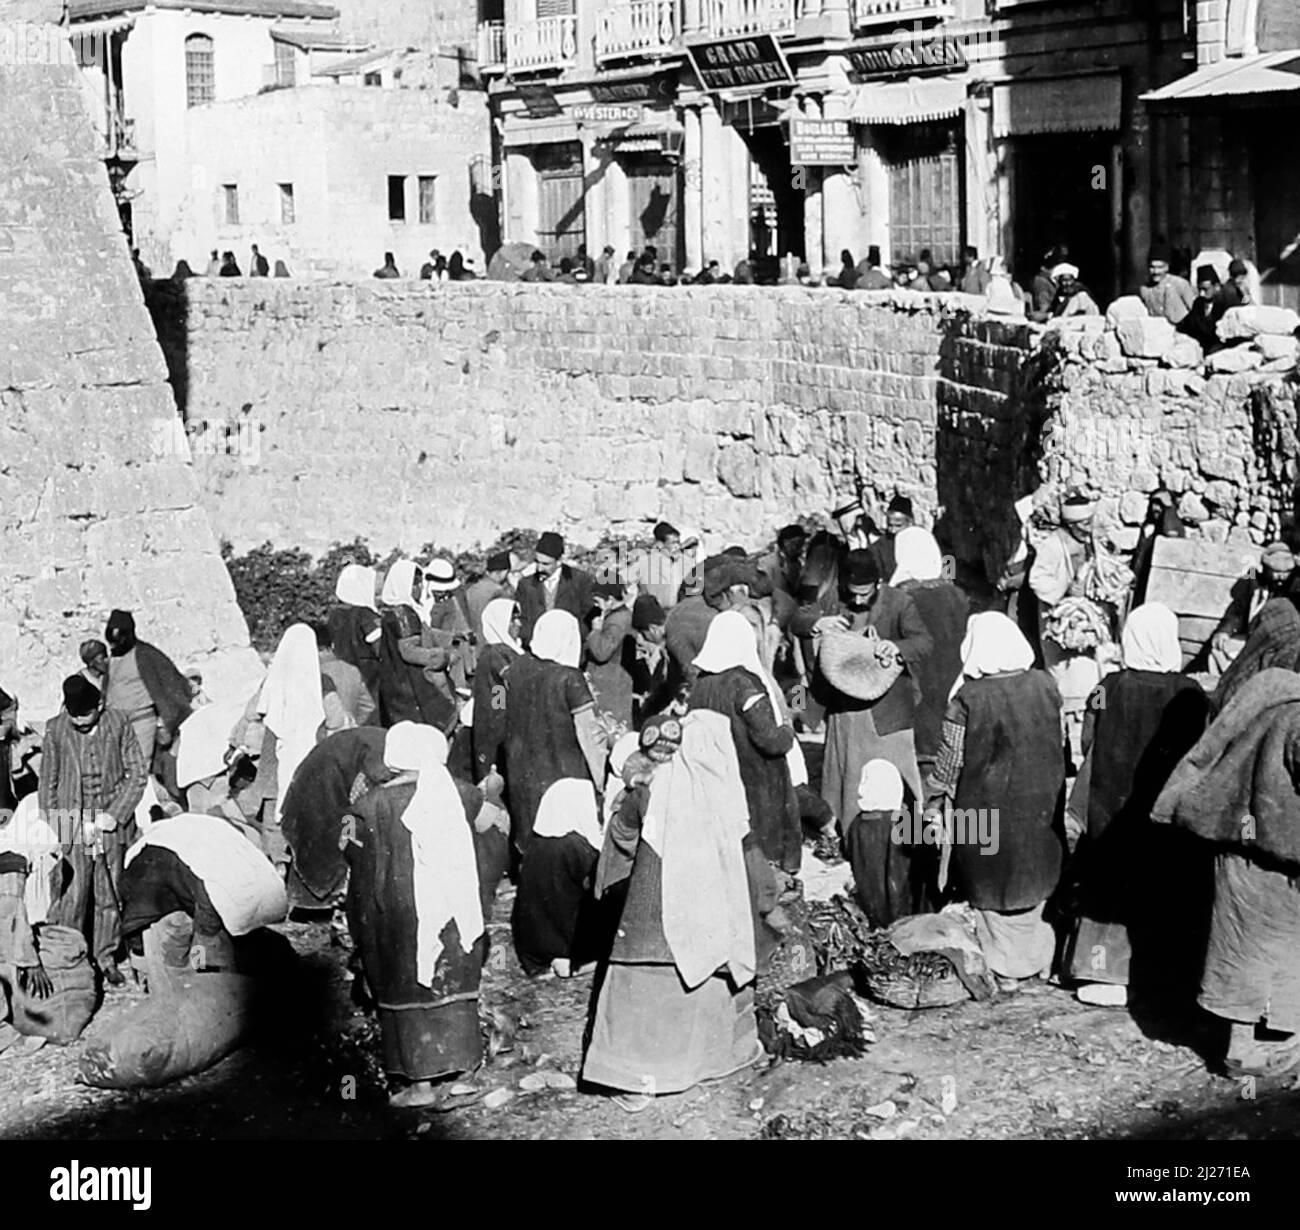 Mercado, Puerta de Jaffa, Jerusalén, Israel, principios de 1900s Foto de stock